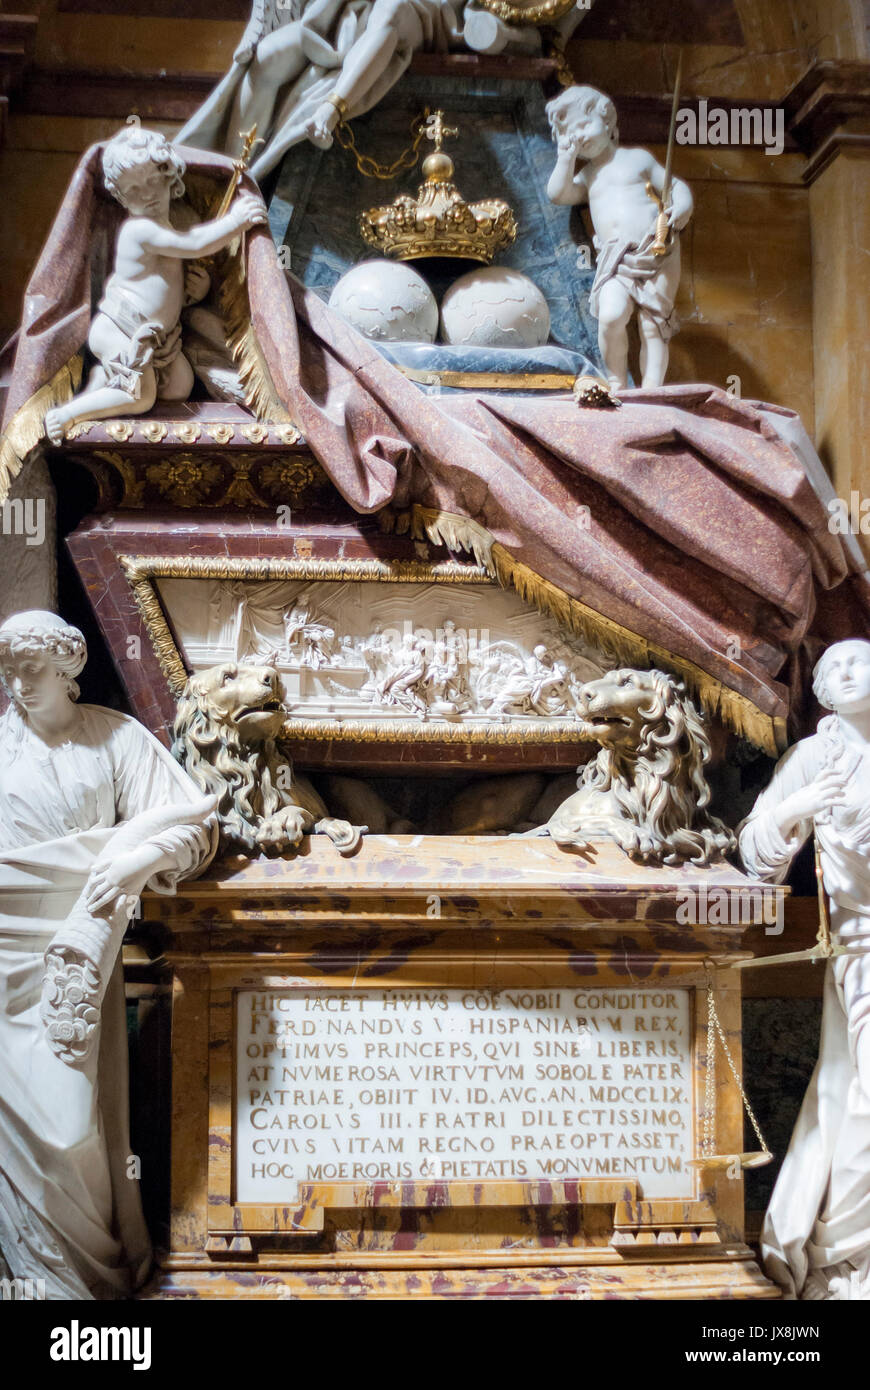 La tumba del rey Fernando VI. Iglesia de Santa Bárbara. Madrid. España Foto de stock